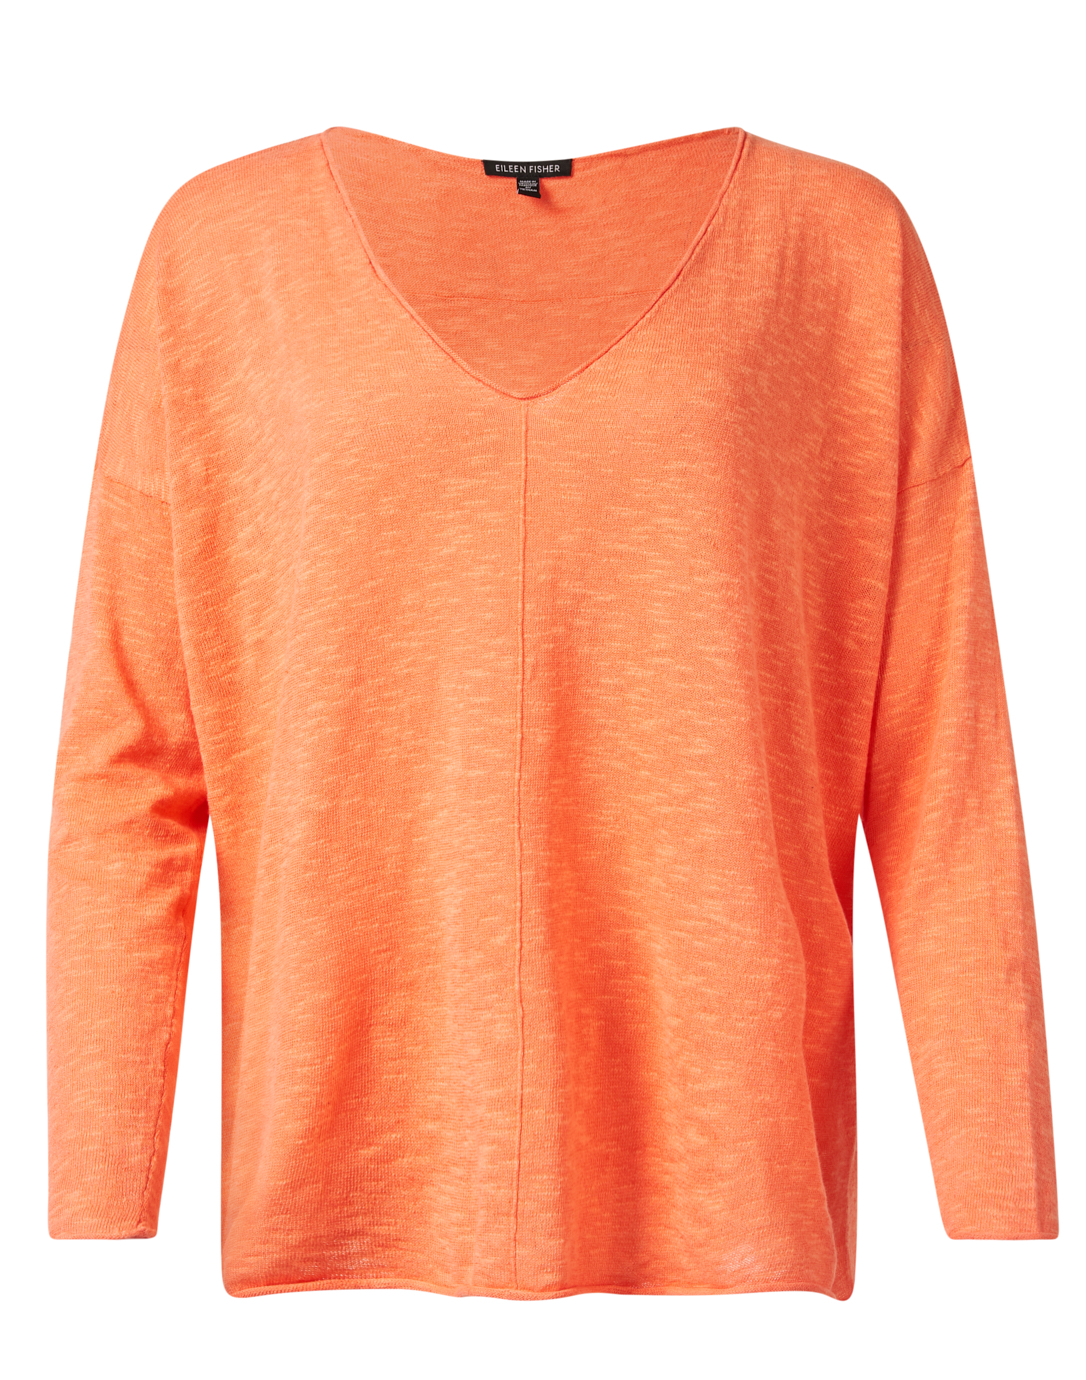 Orange Linen Cotton Top | Eileen Fisher